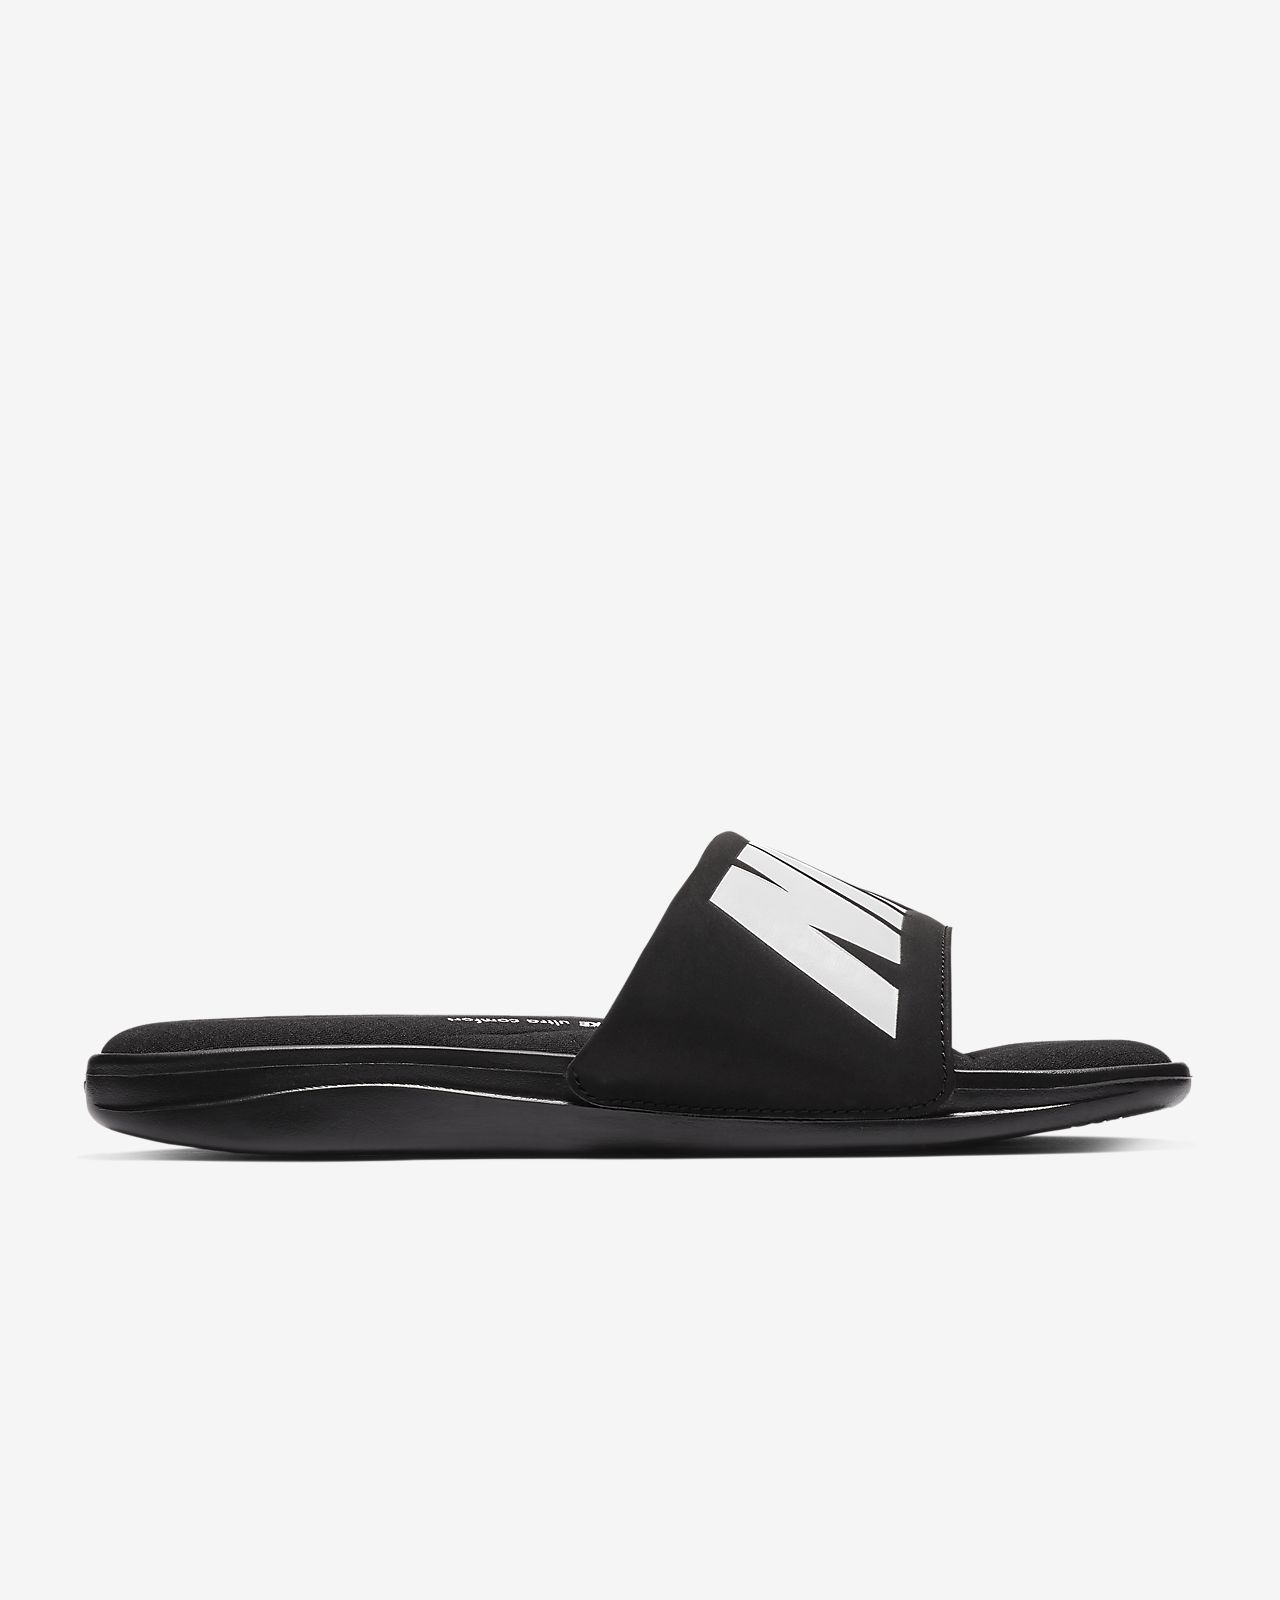 Nike Ultra Comfort Slide Black White-Black (Women's)